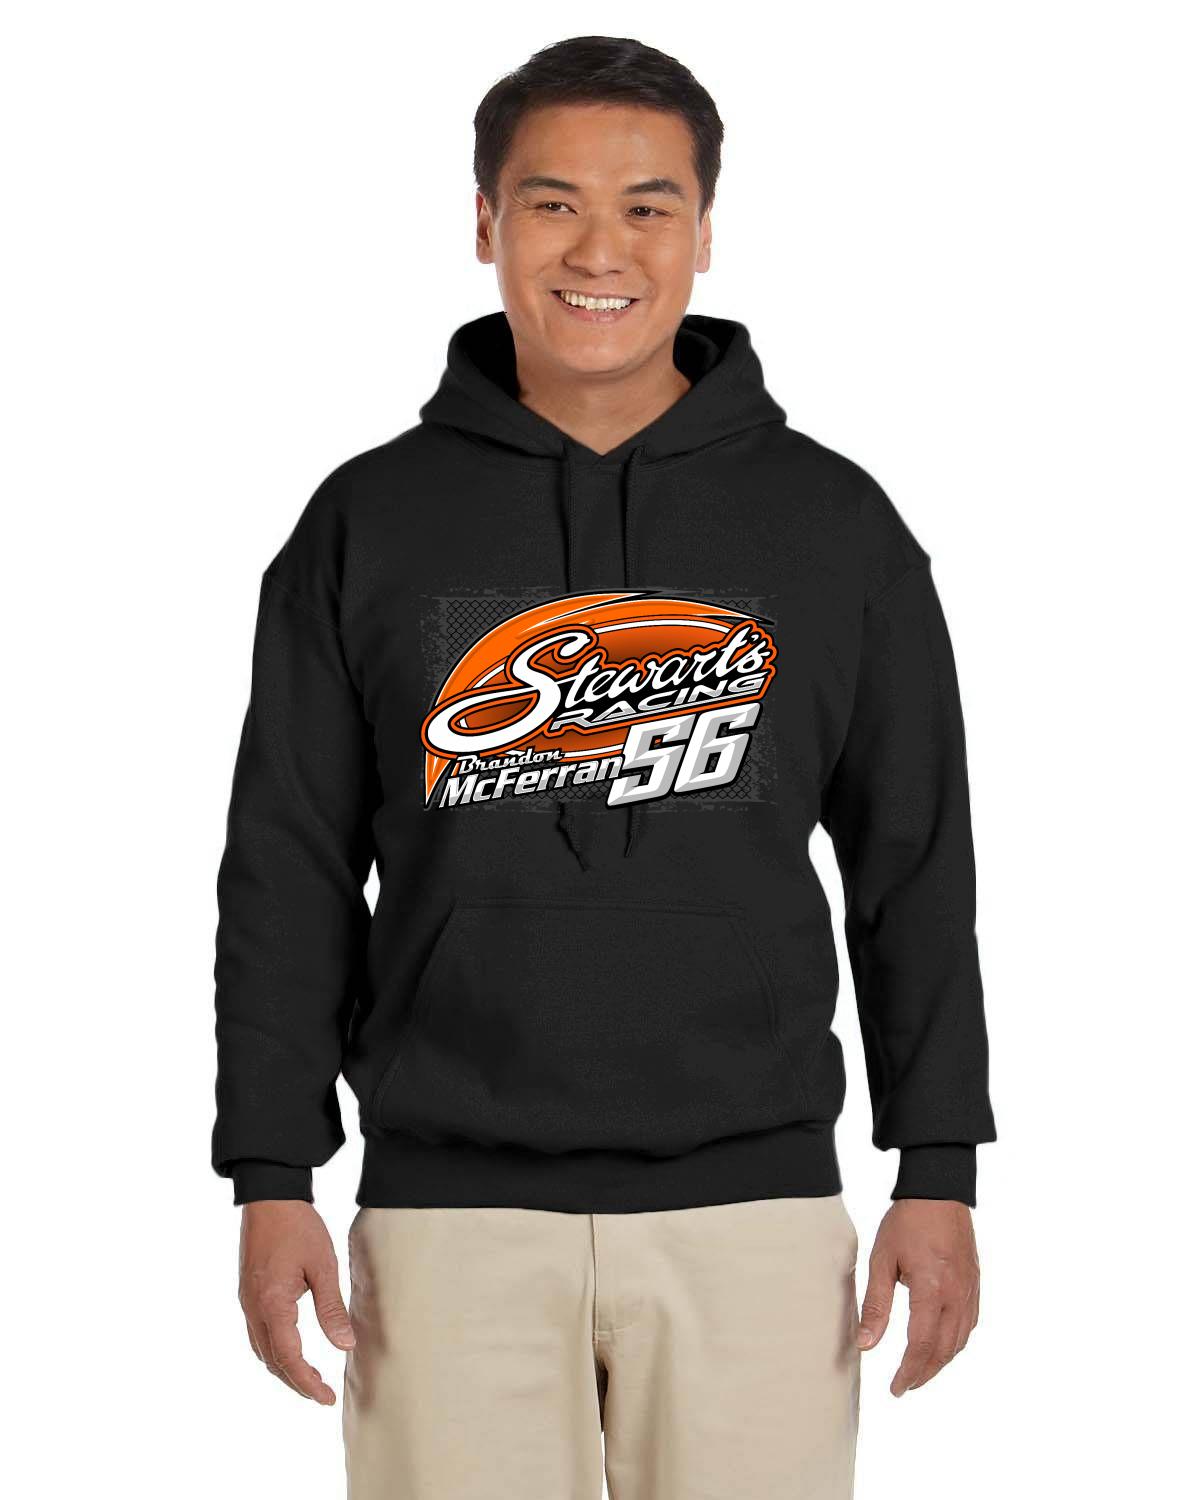 Stewart's Racing Brandon McFerran 56 adult hoodie